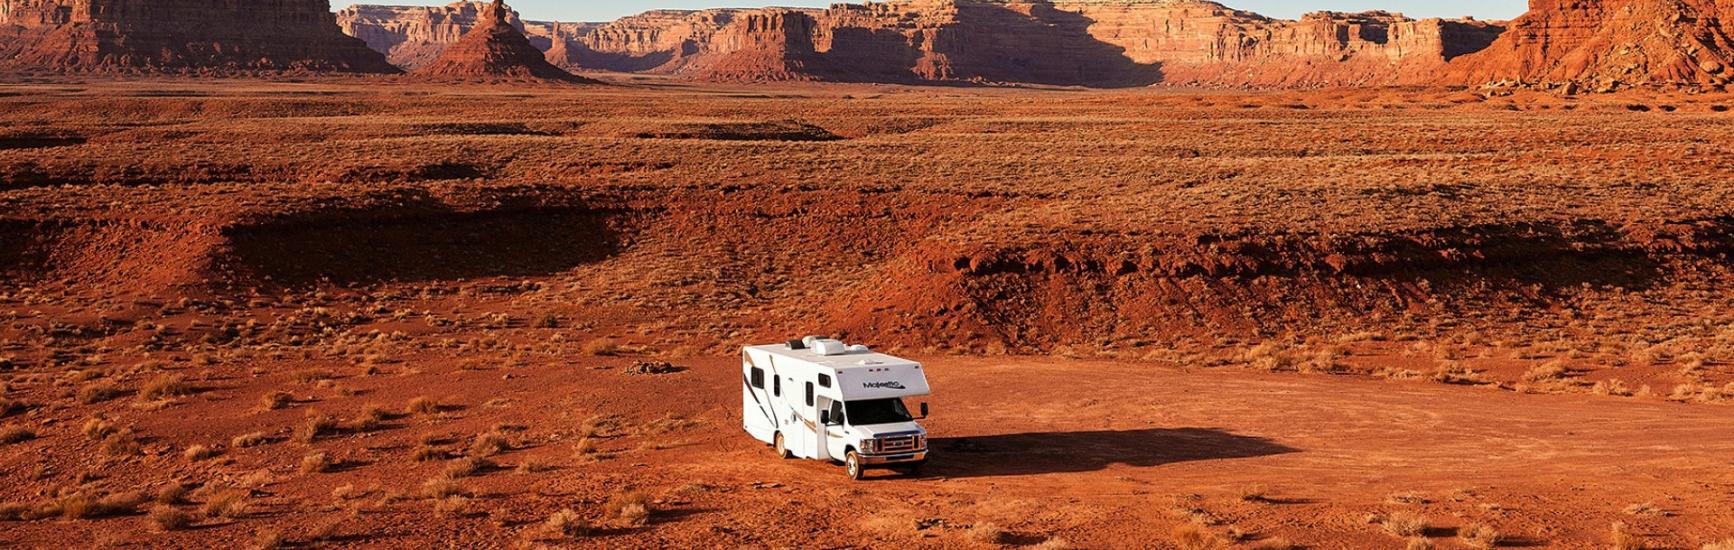 Cruise America Wohnmobil in einer Wüste mit rotem Sand